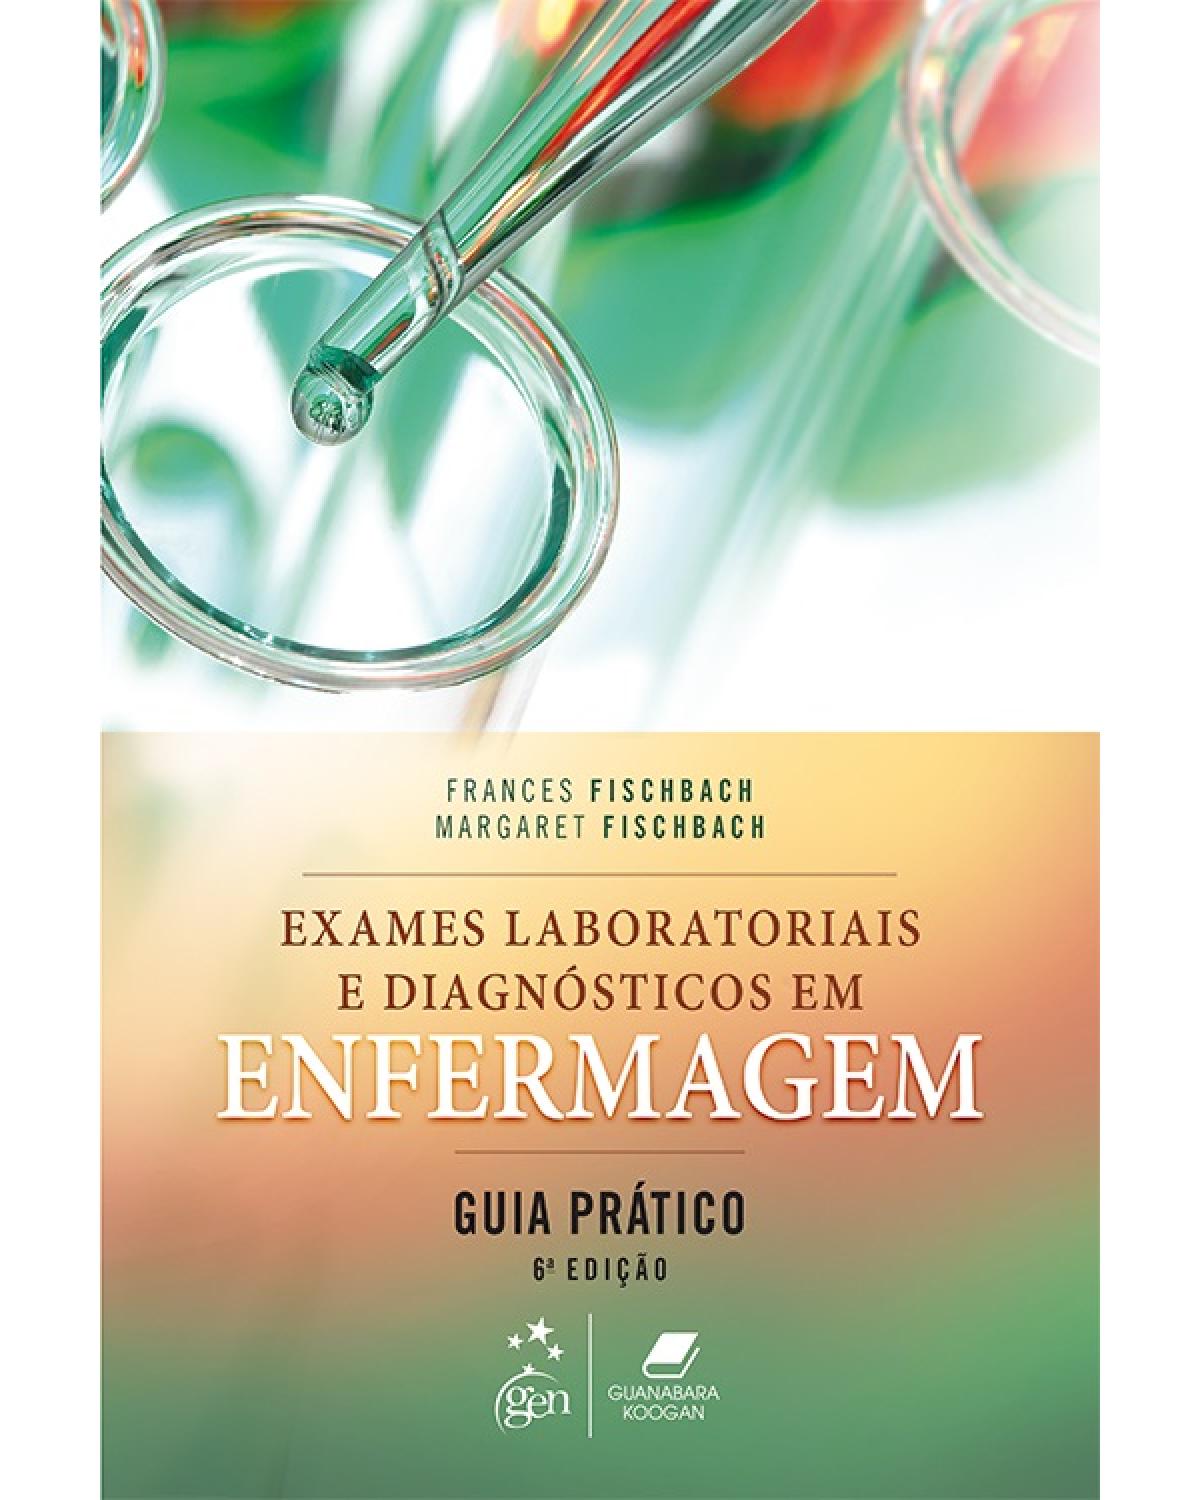 Exames laboratoriais e diagnósticos em enfermagem - Guia prático - 6ª Edição | 2017